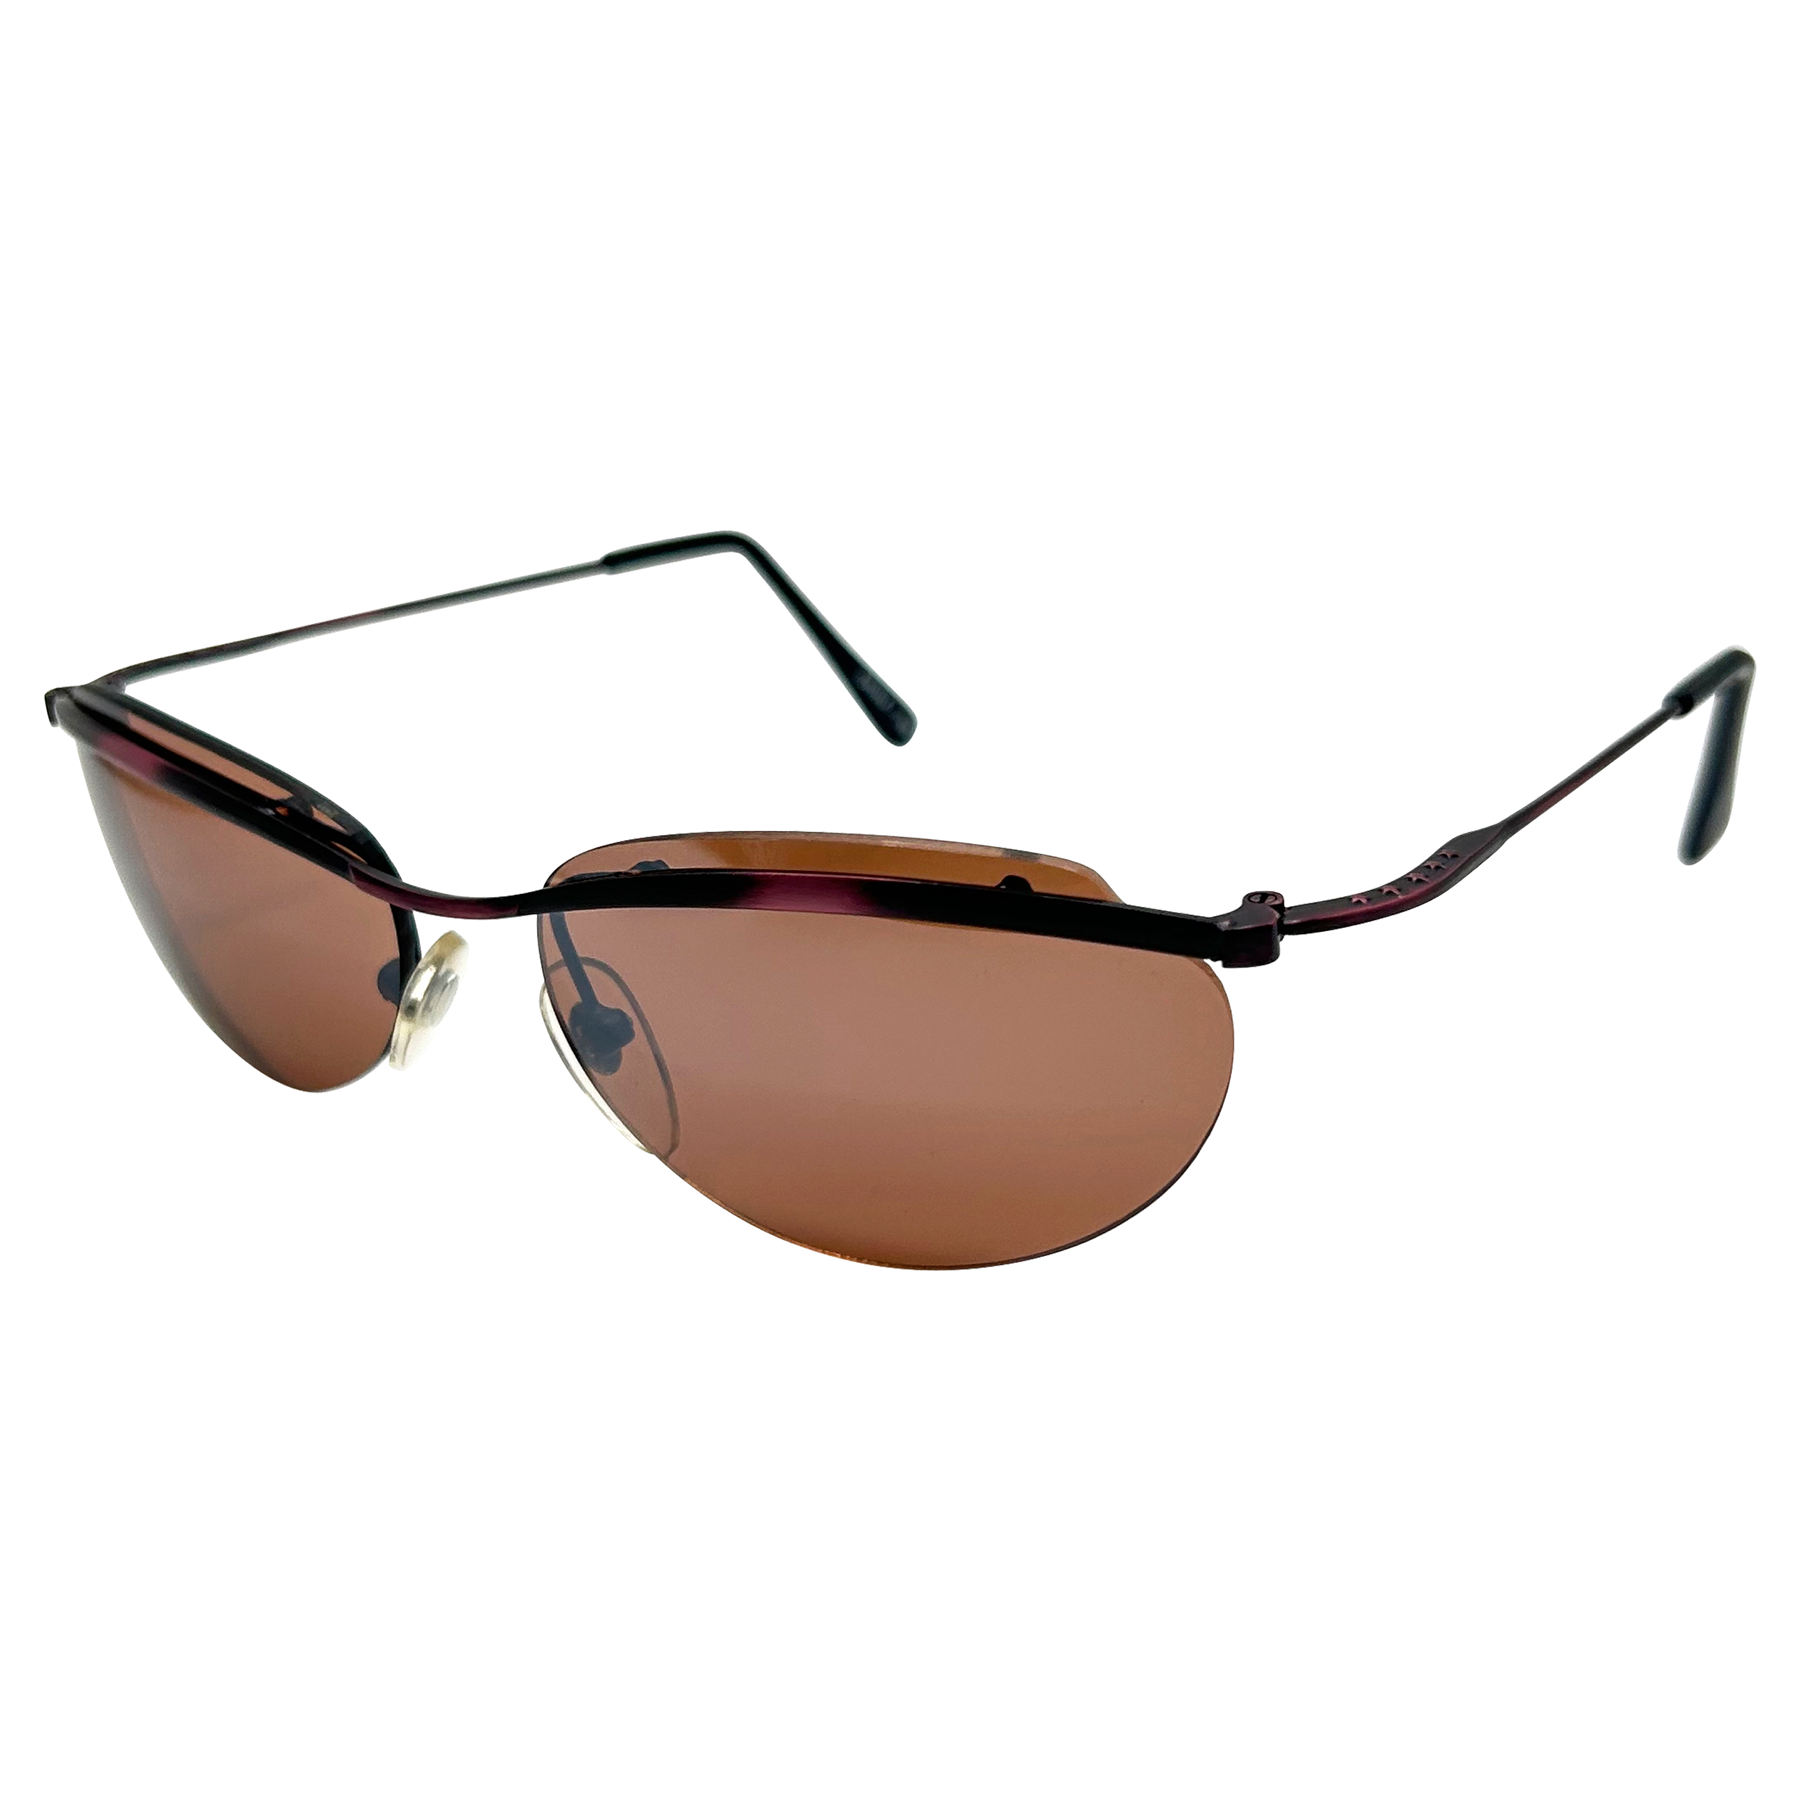 BLIND SPOT 90s Sunglasses | Blue-Blocker | Day Driving